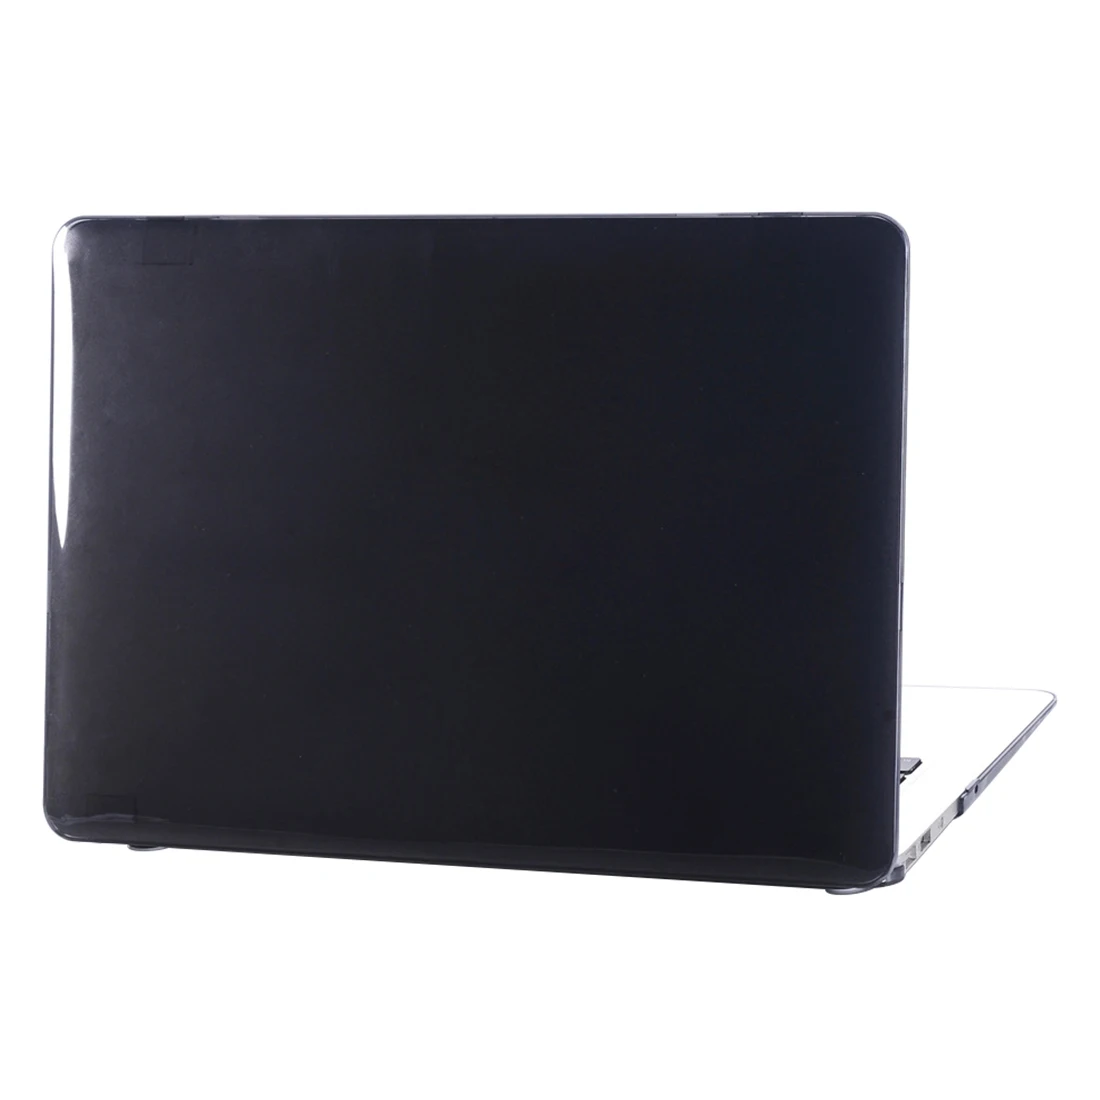 Etmakit модный Кристальный матовый чехол для Mac ноутбука Macbook Pro13 дюймов 15 защитный корпус Air 11 дюймов компьютер 12 дюймов оболочка - Цвет: black